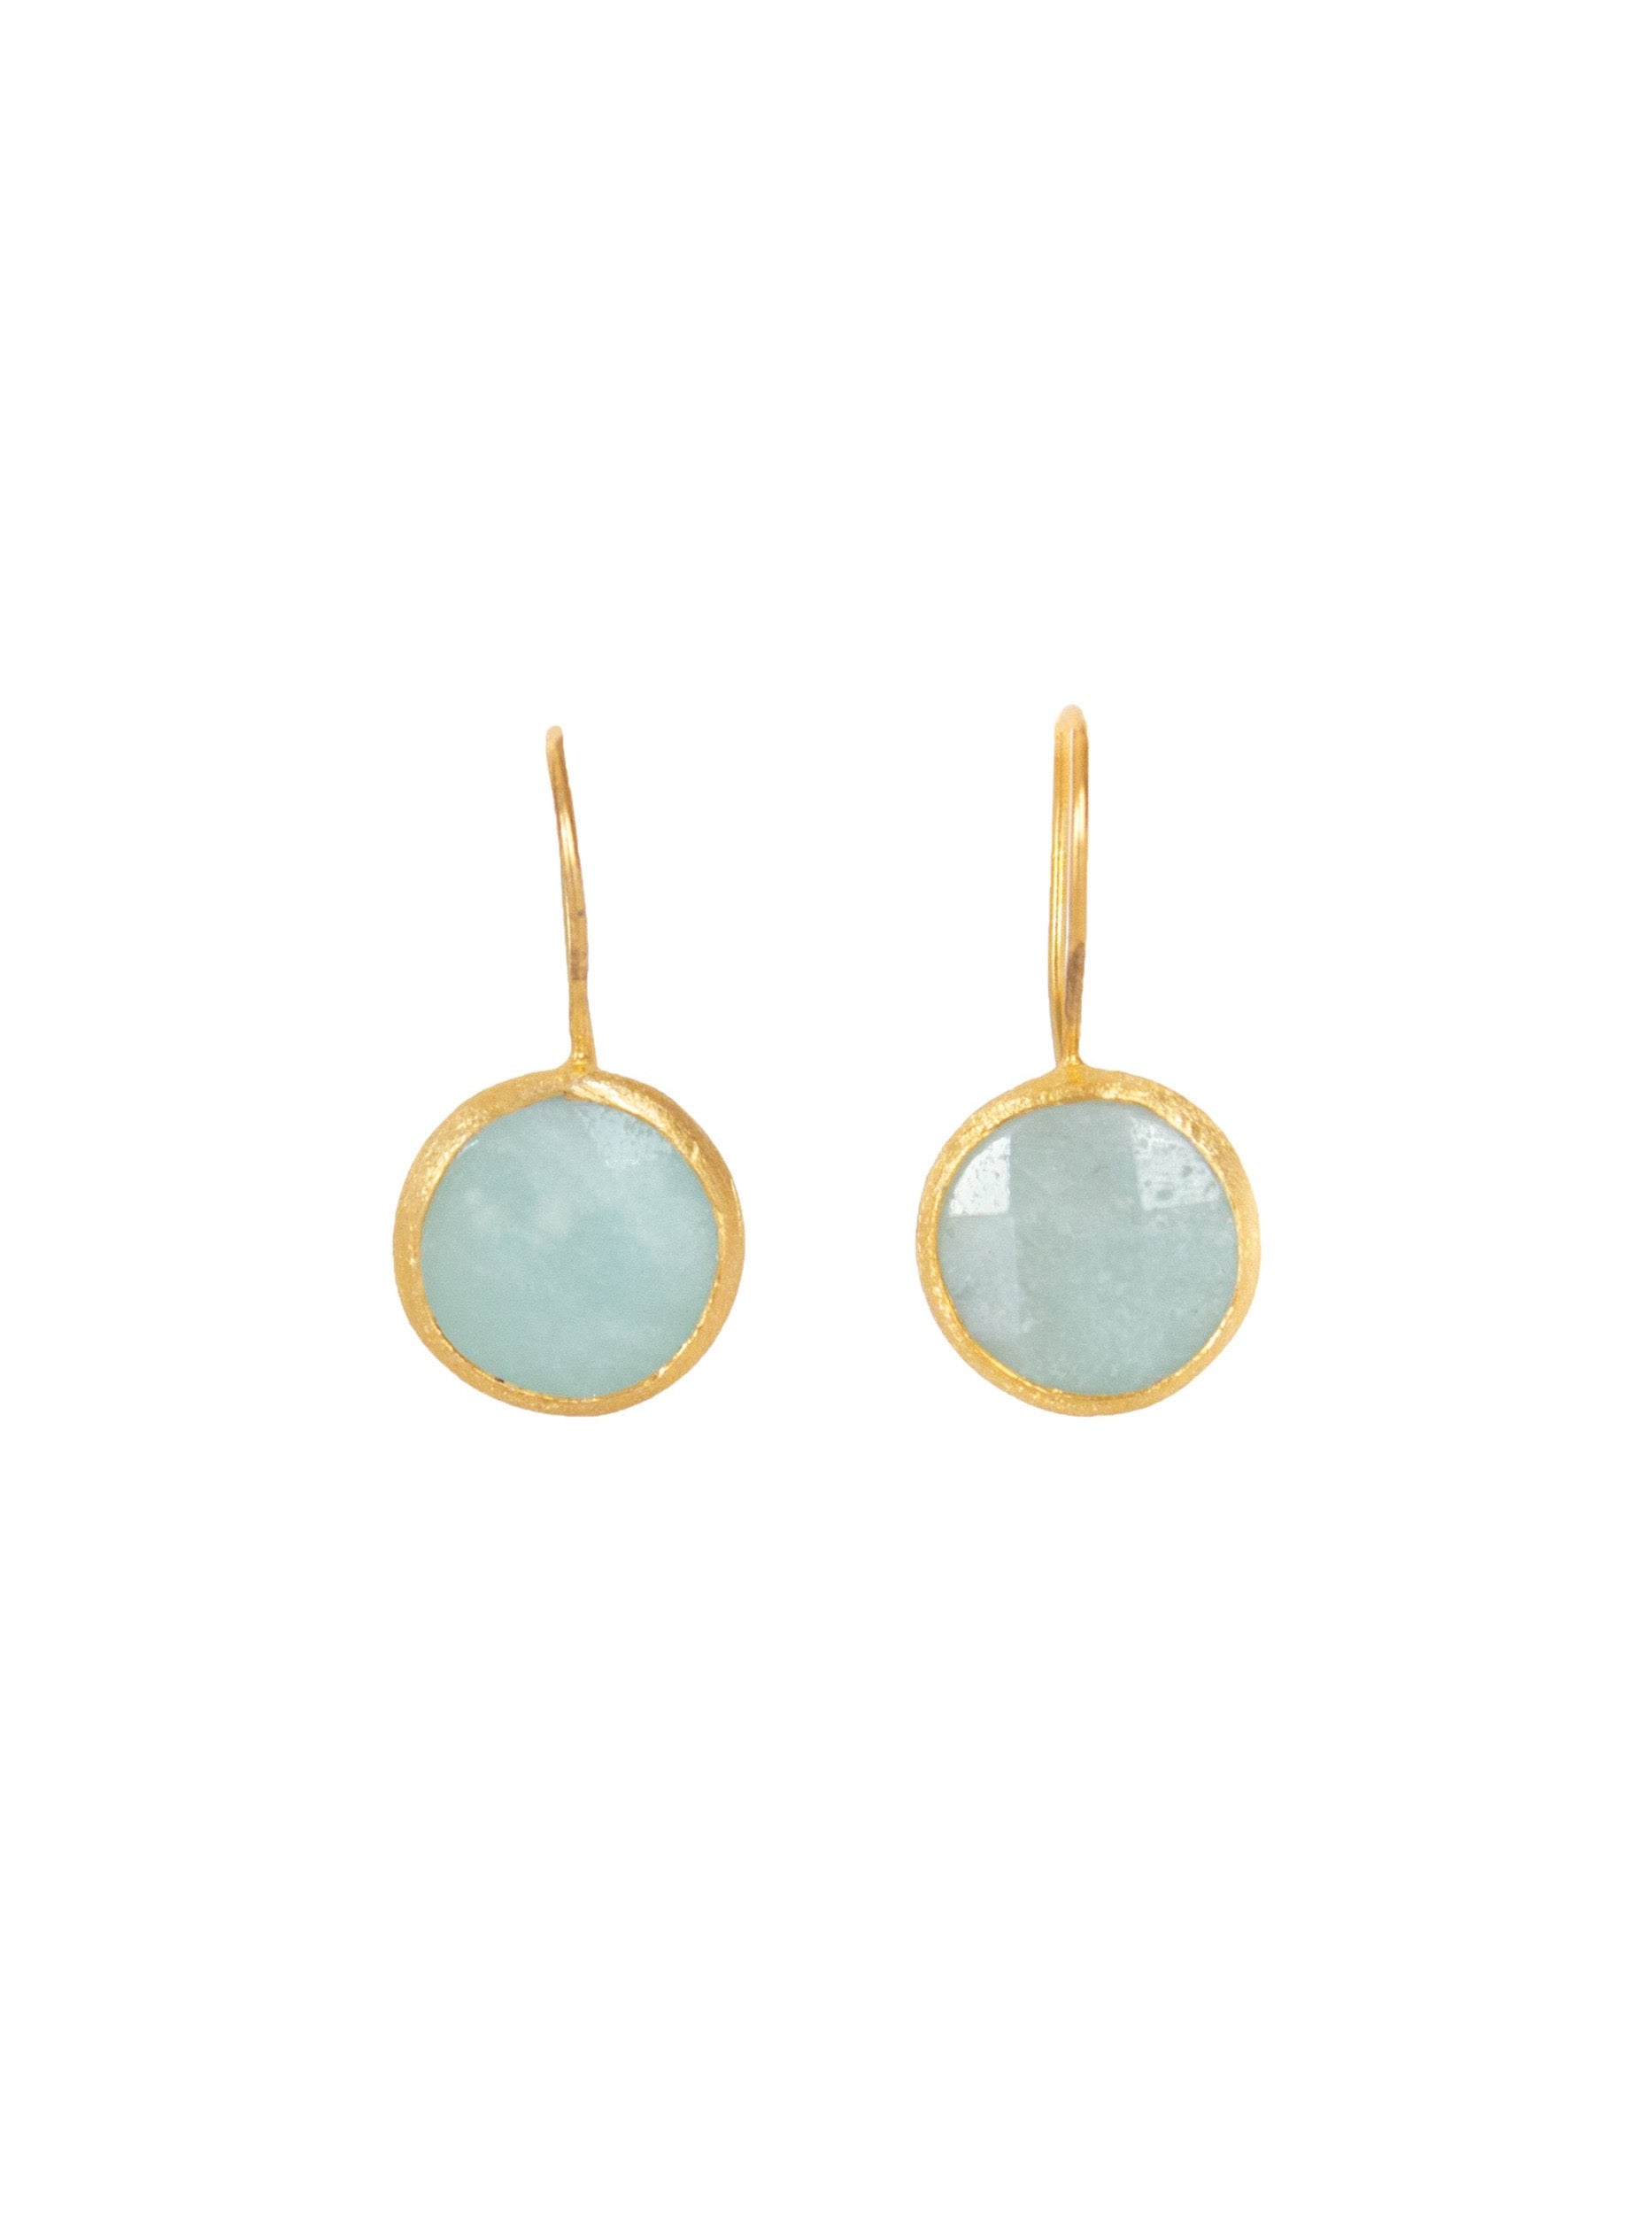 Gold framed Green Aventurine gemstone earrings